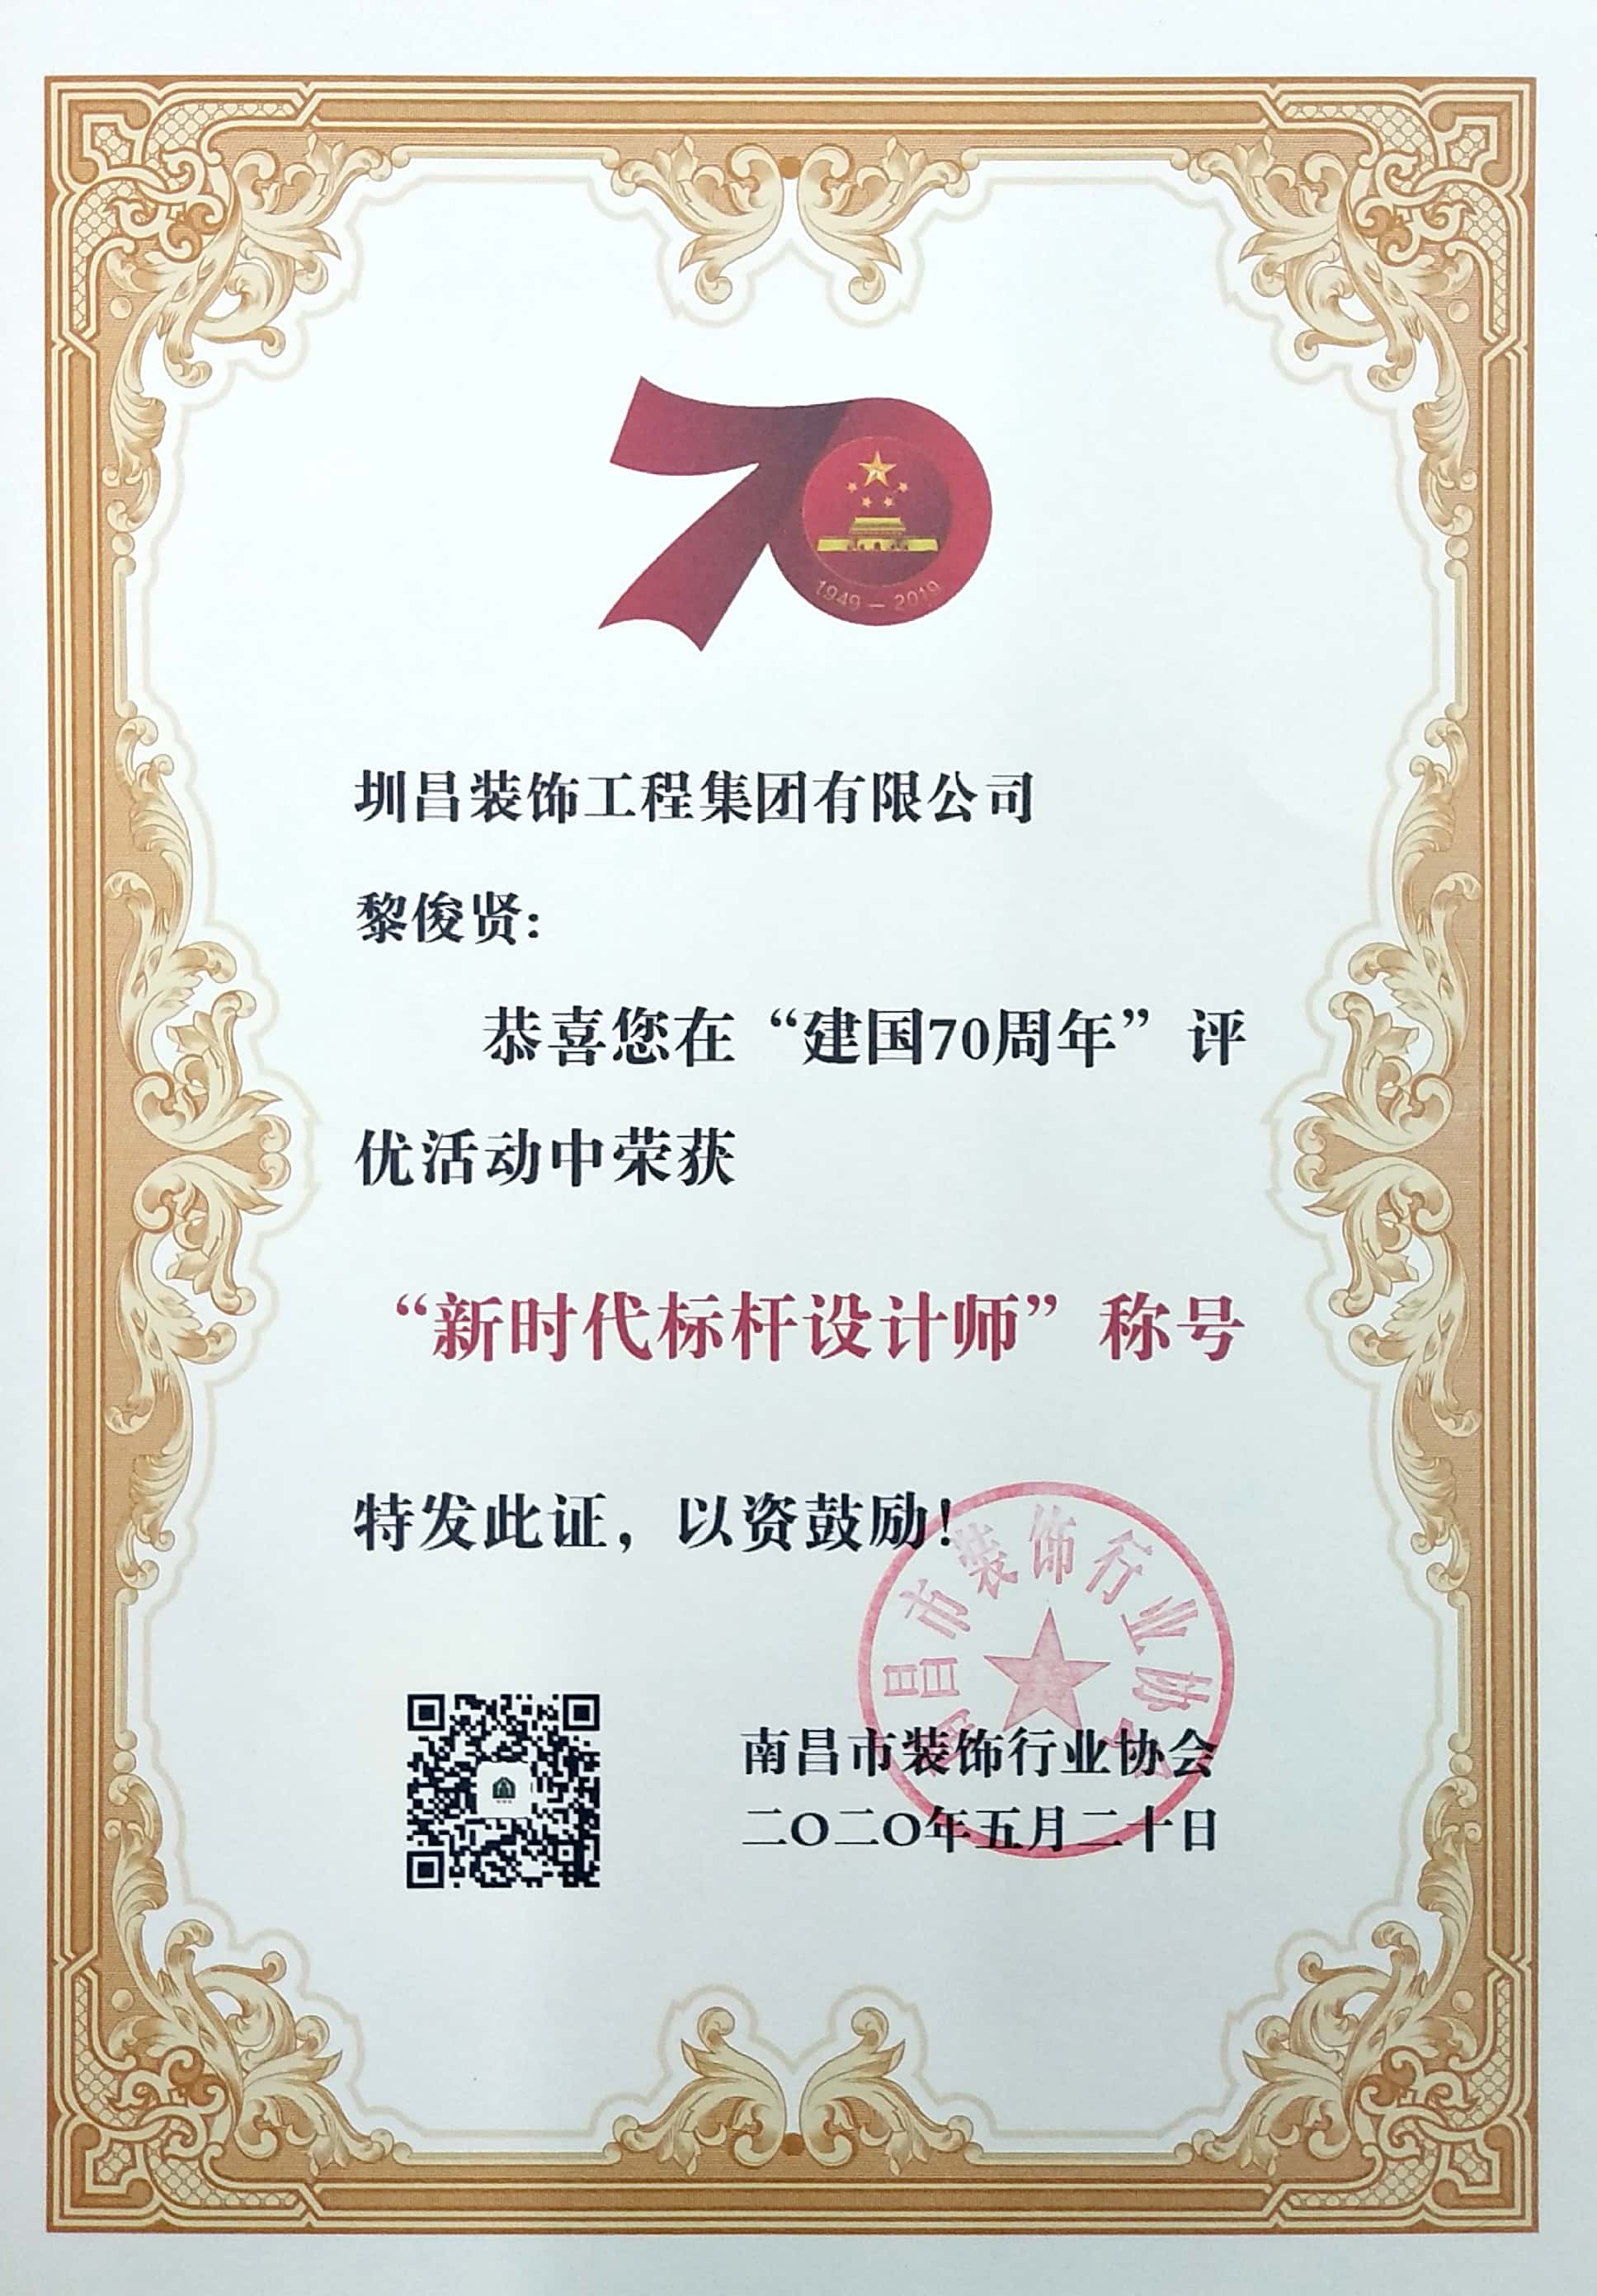 黎俊贤同志荣获2020年新时代标杆设计师称号